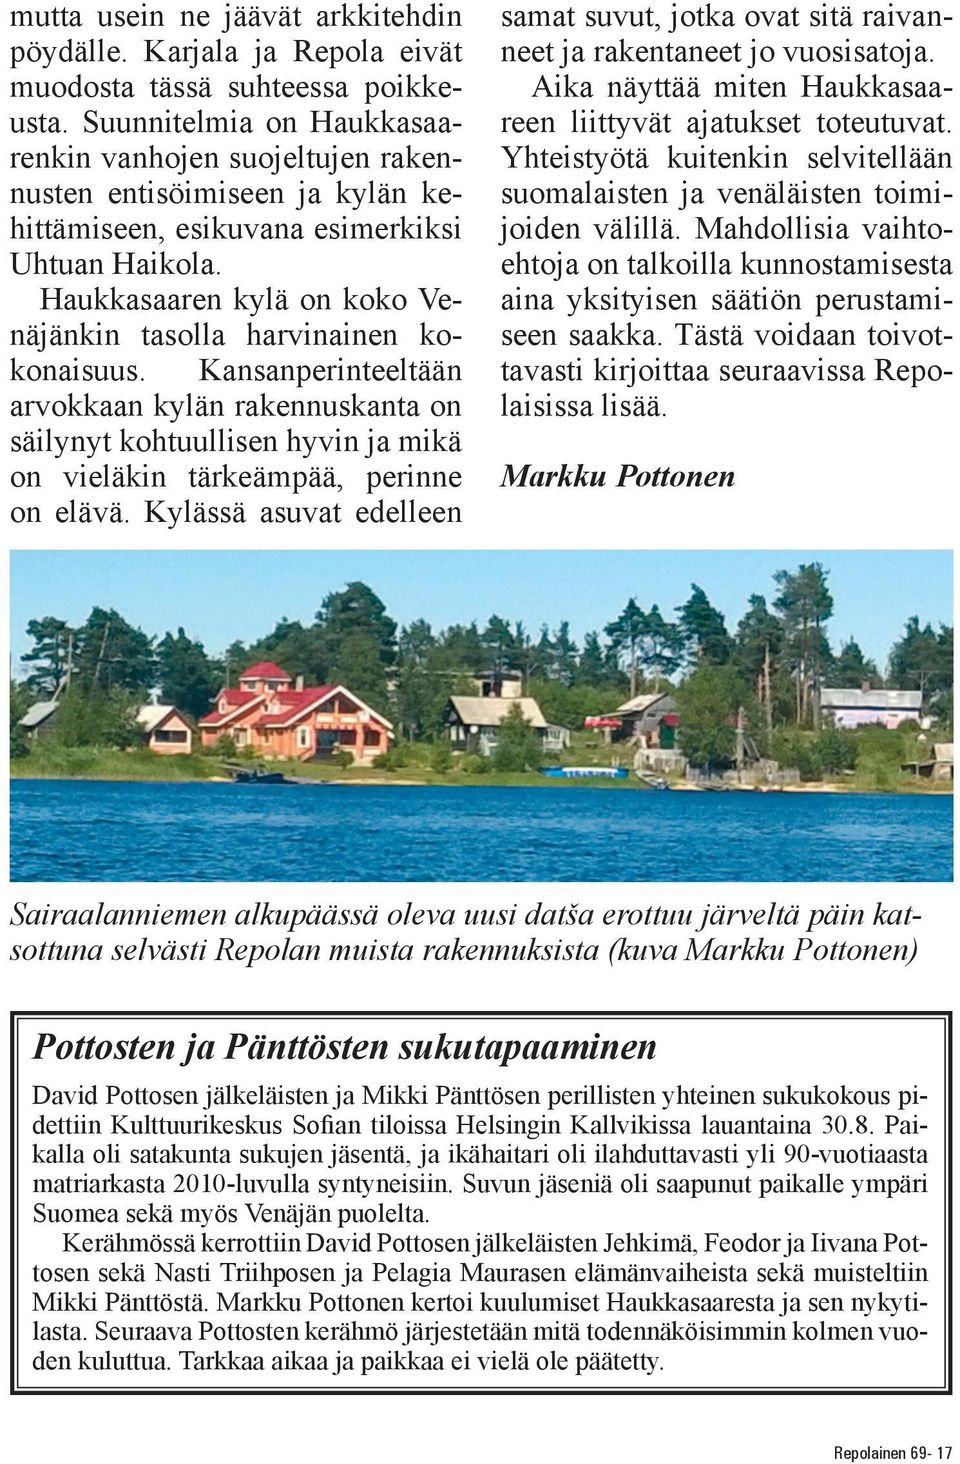 Haukkasaaren kylä on koko Venäjänkin tasolla harvinainen kokonaisuus. Kansanperinteeltään arvokkaan kylän rakennuskanta on säilynyt kohtuullisen hyvin ja mikä on vieläkin tärkeämpää, perinne on elävä.